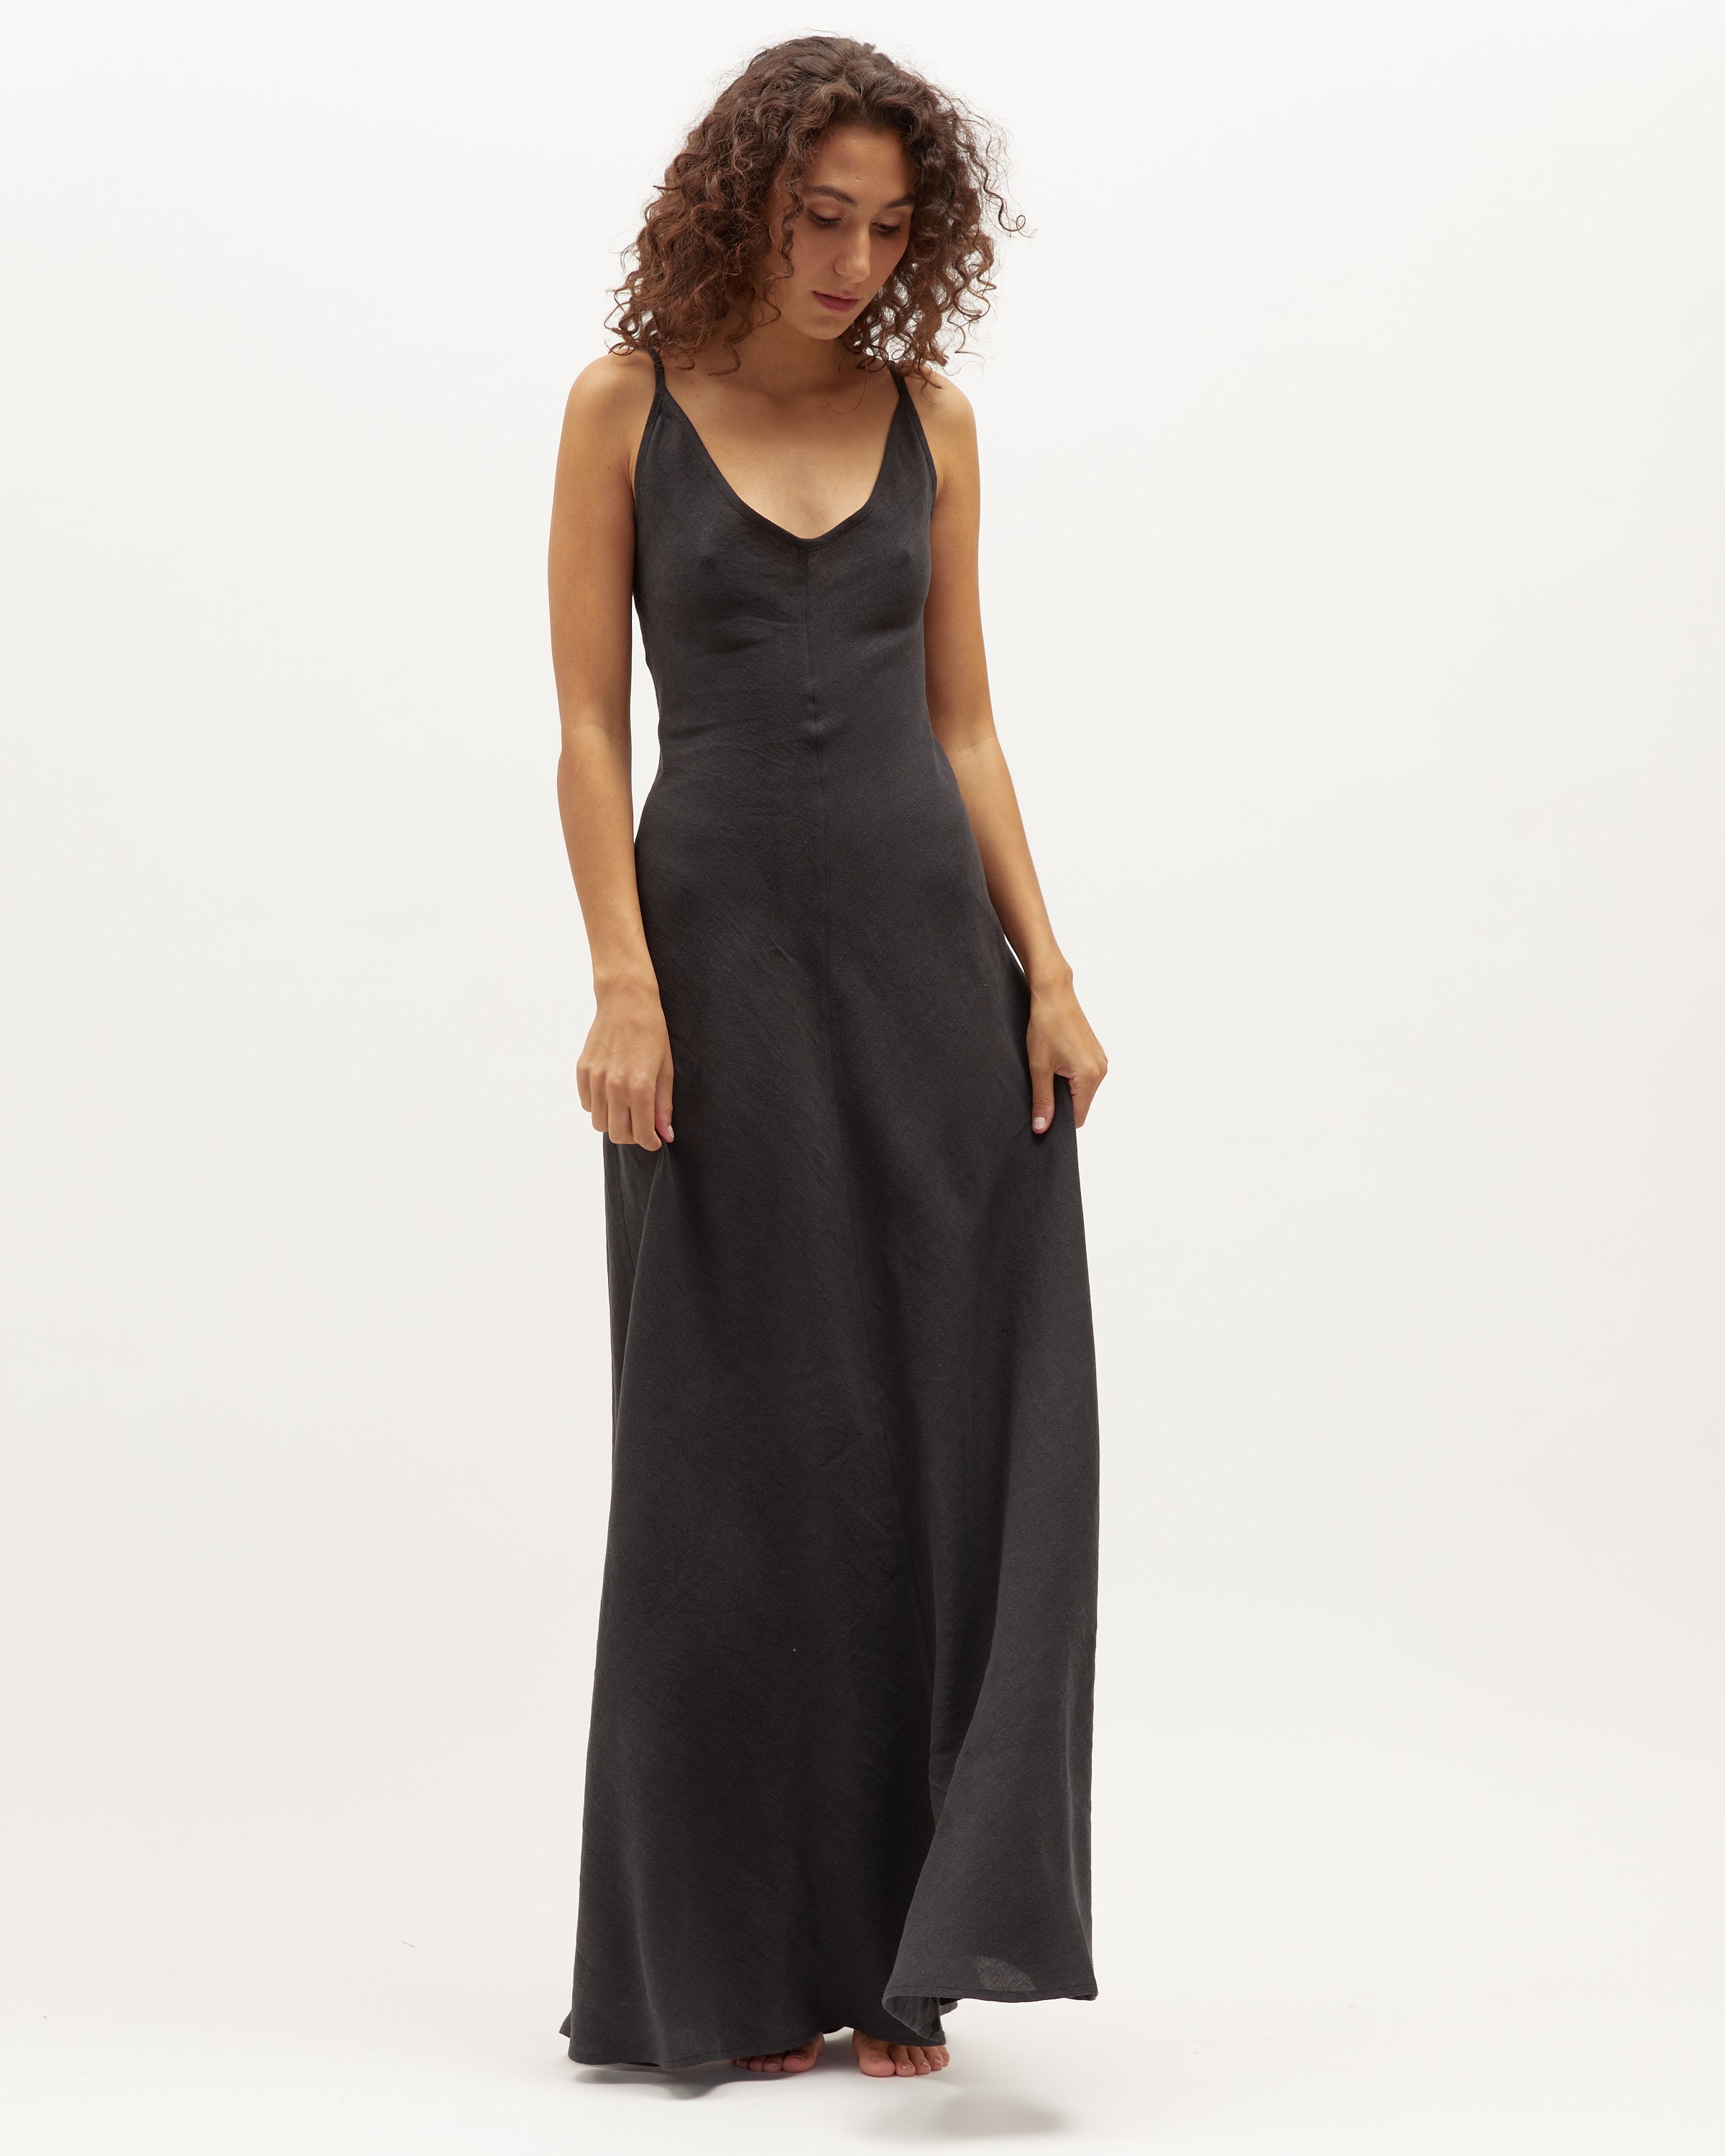 Sloane Dress | Black Washed Linen $360